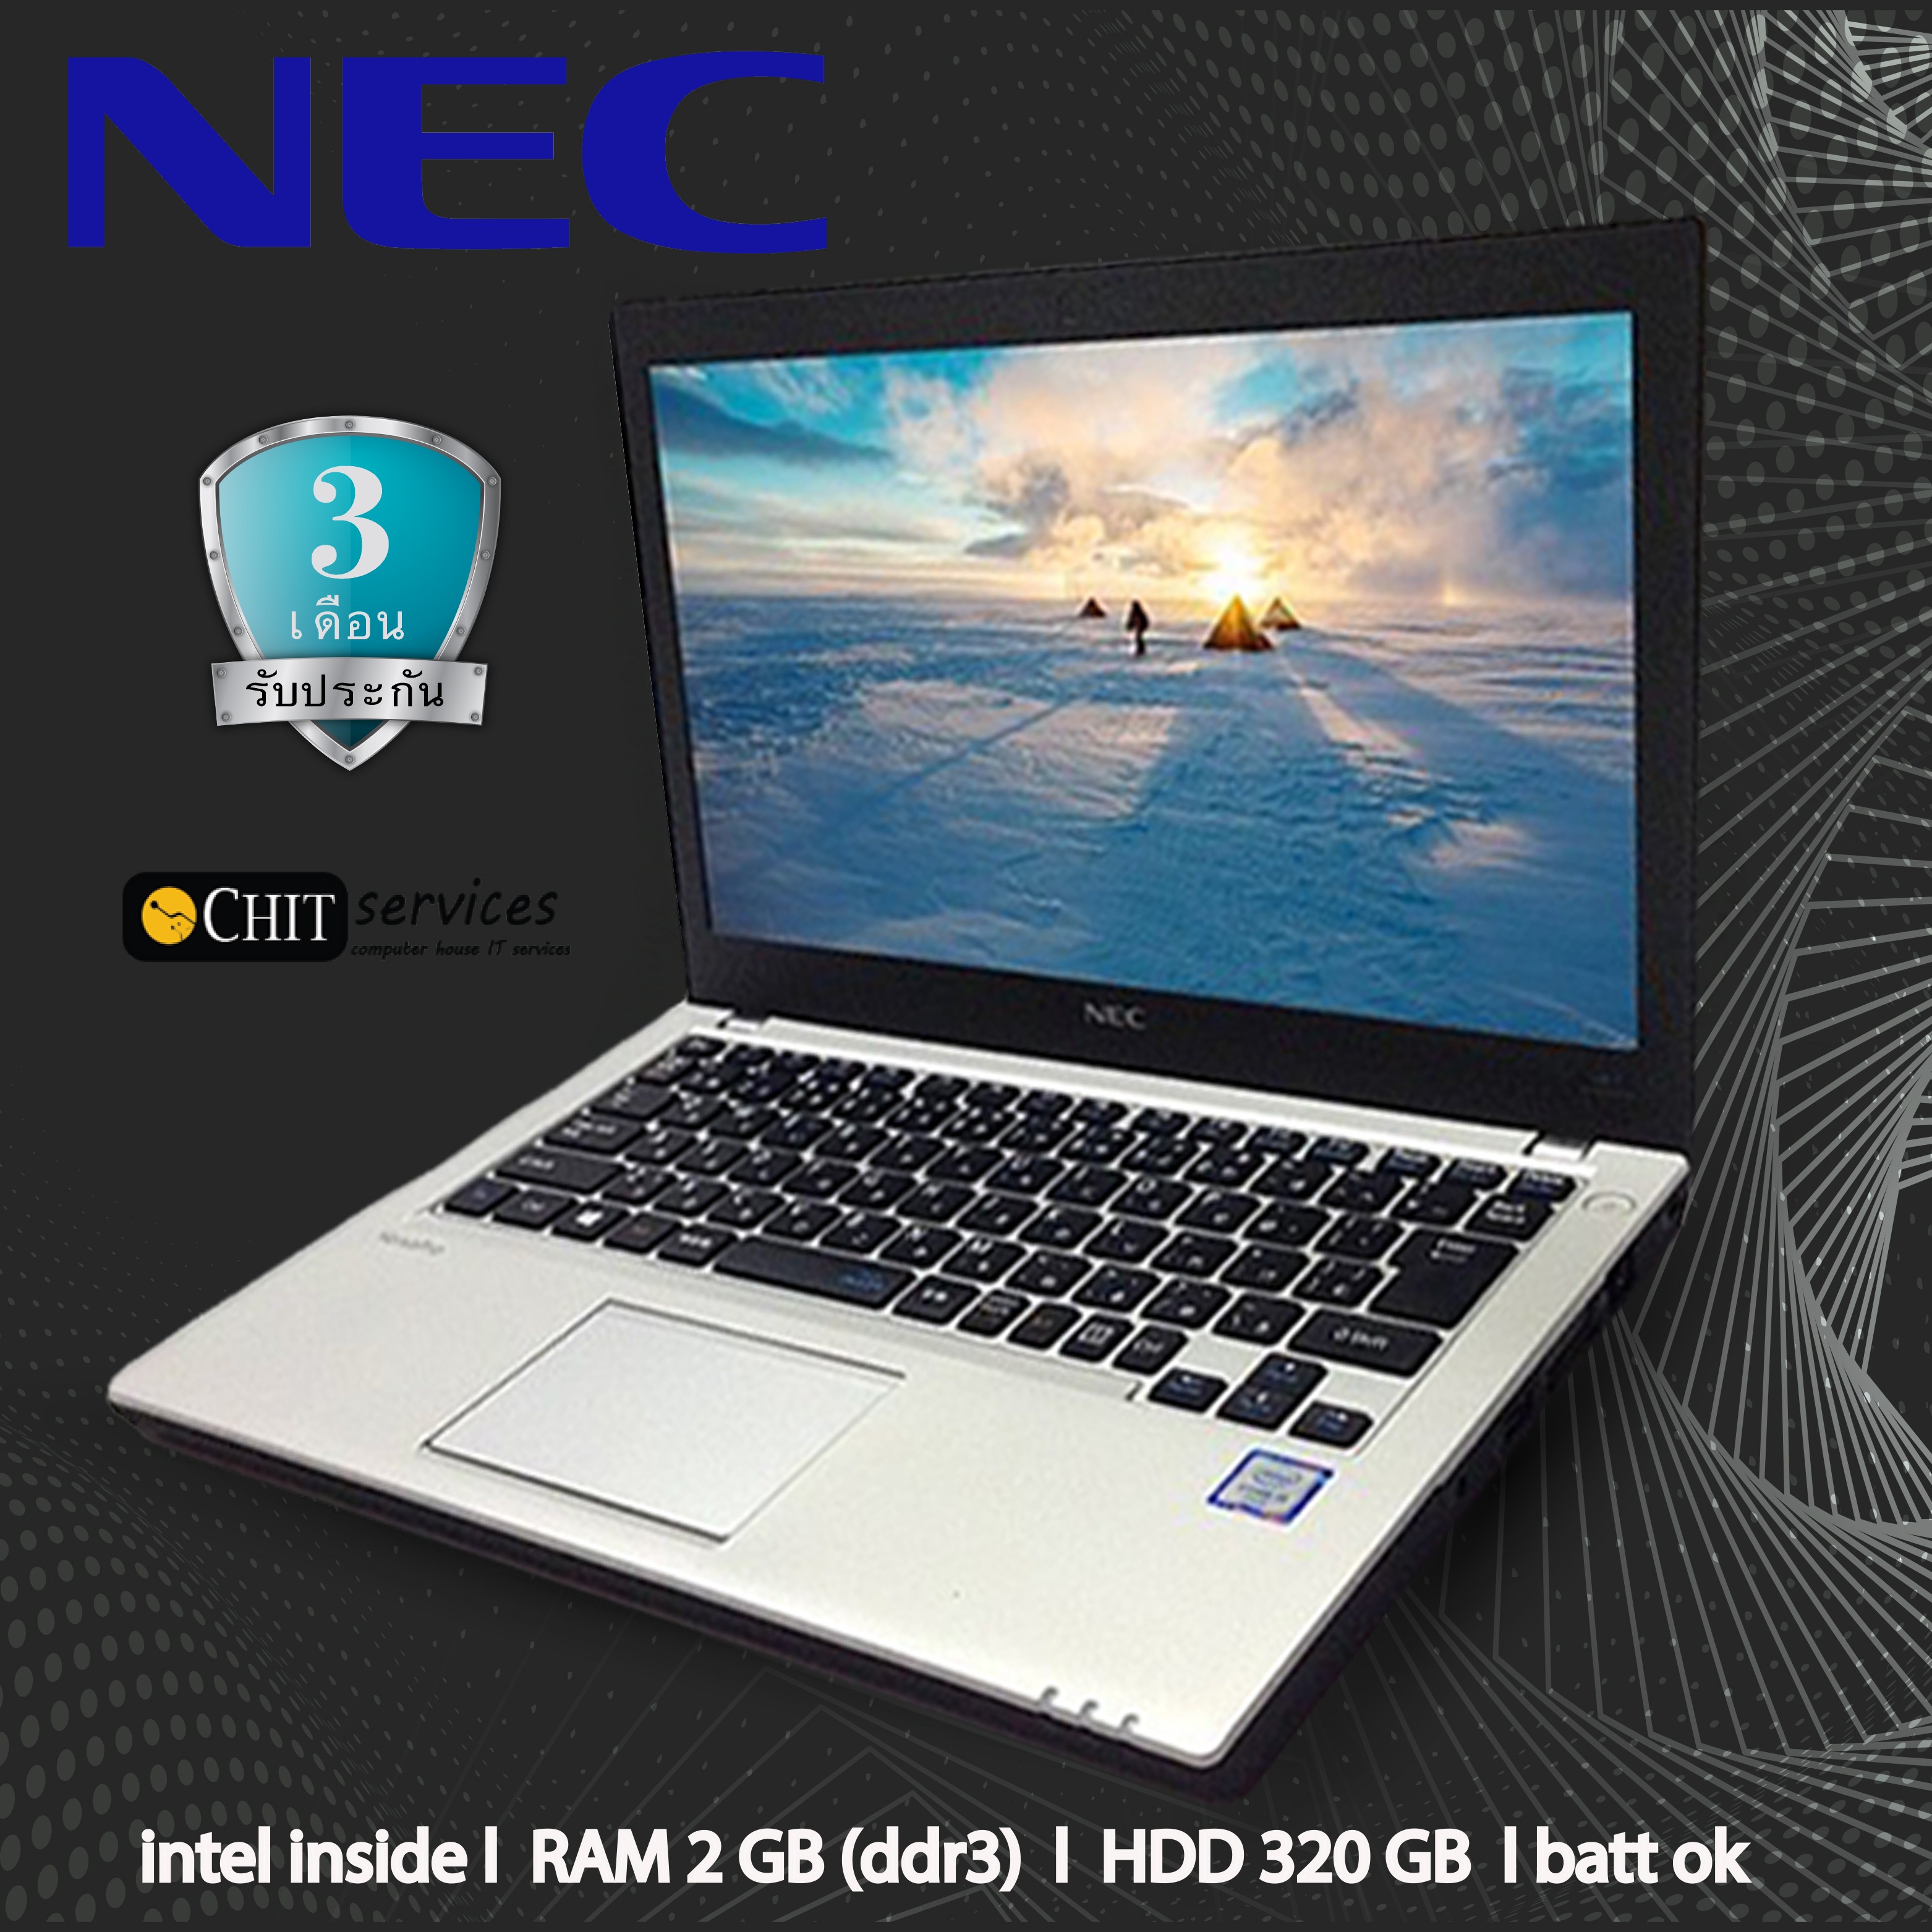 โน๊ตบุ๊คมือสอง ราคาถูกๆๆ NEC Versapro VK25L intel inside ram2 hdd320/dvd/hdmi/vga ดีไซน์สวย น้ำหนักเบา แบตทน สินค้ามีประกันและของแถม